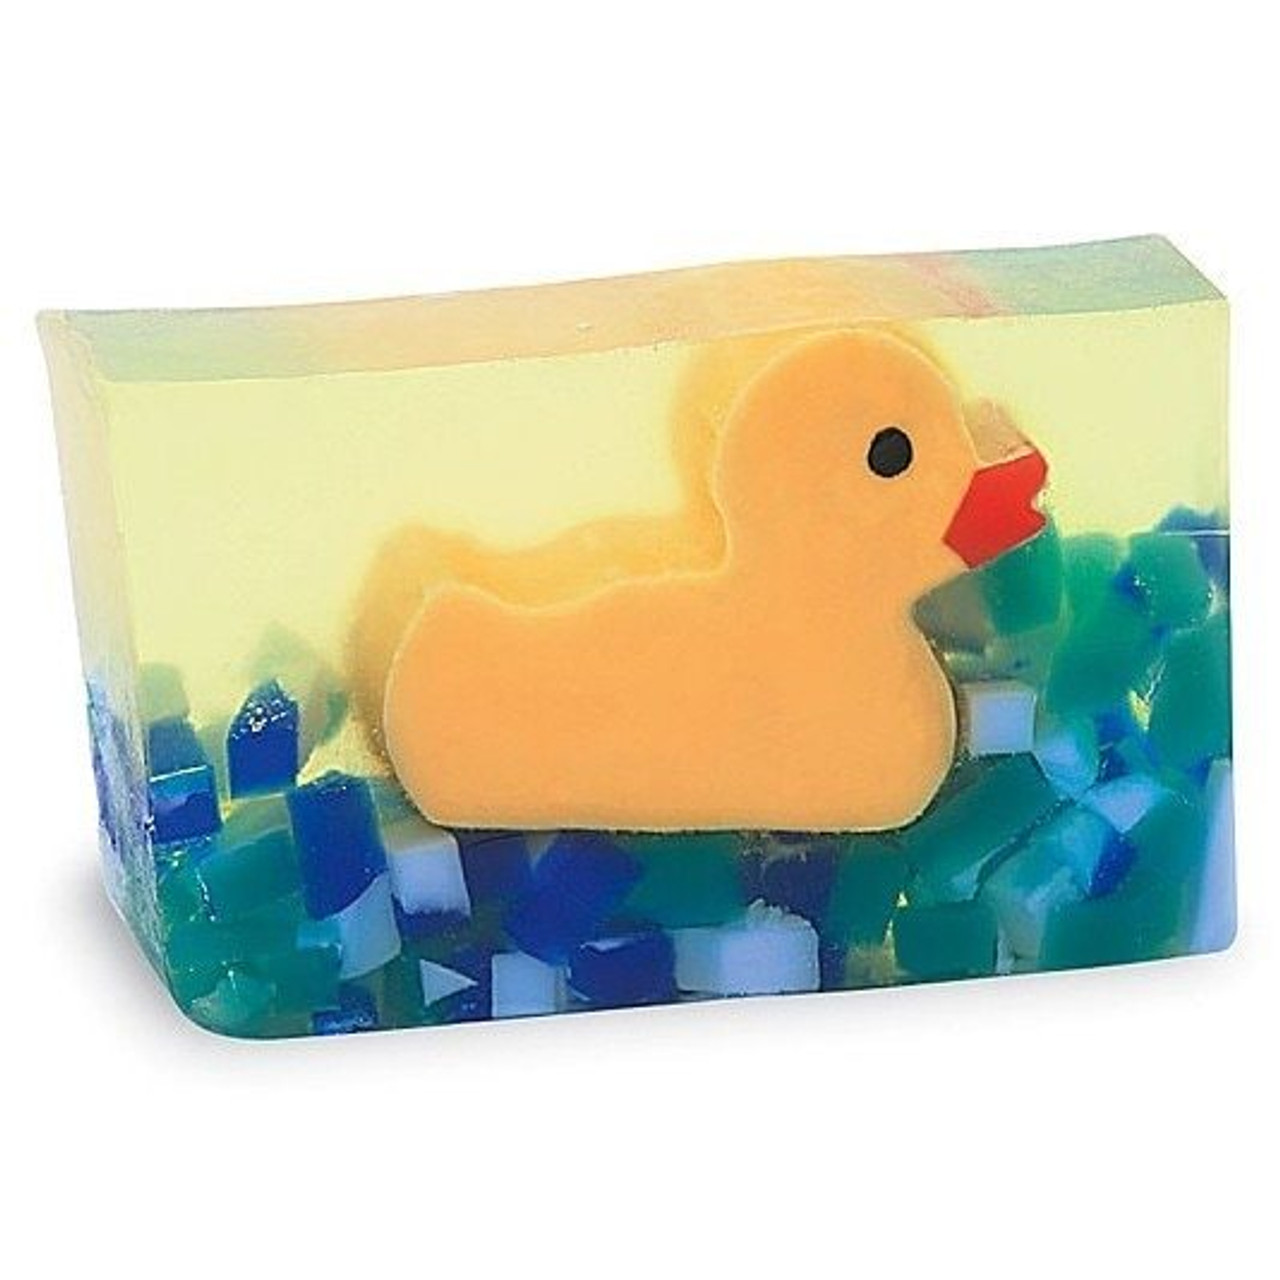 Primal Elements Rubber Duck Soap Bar - 5.8 oz